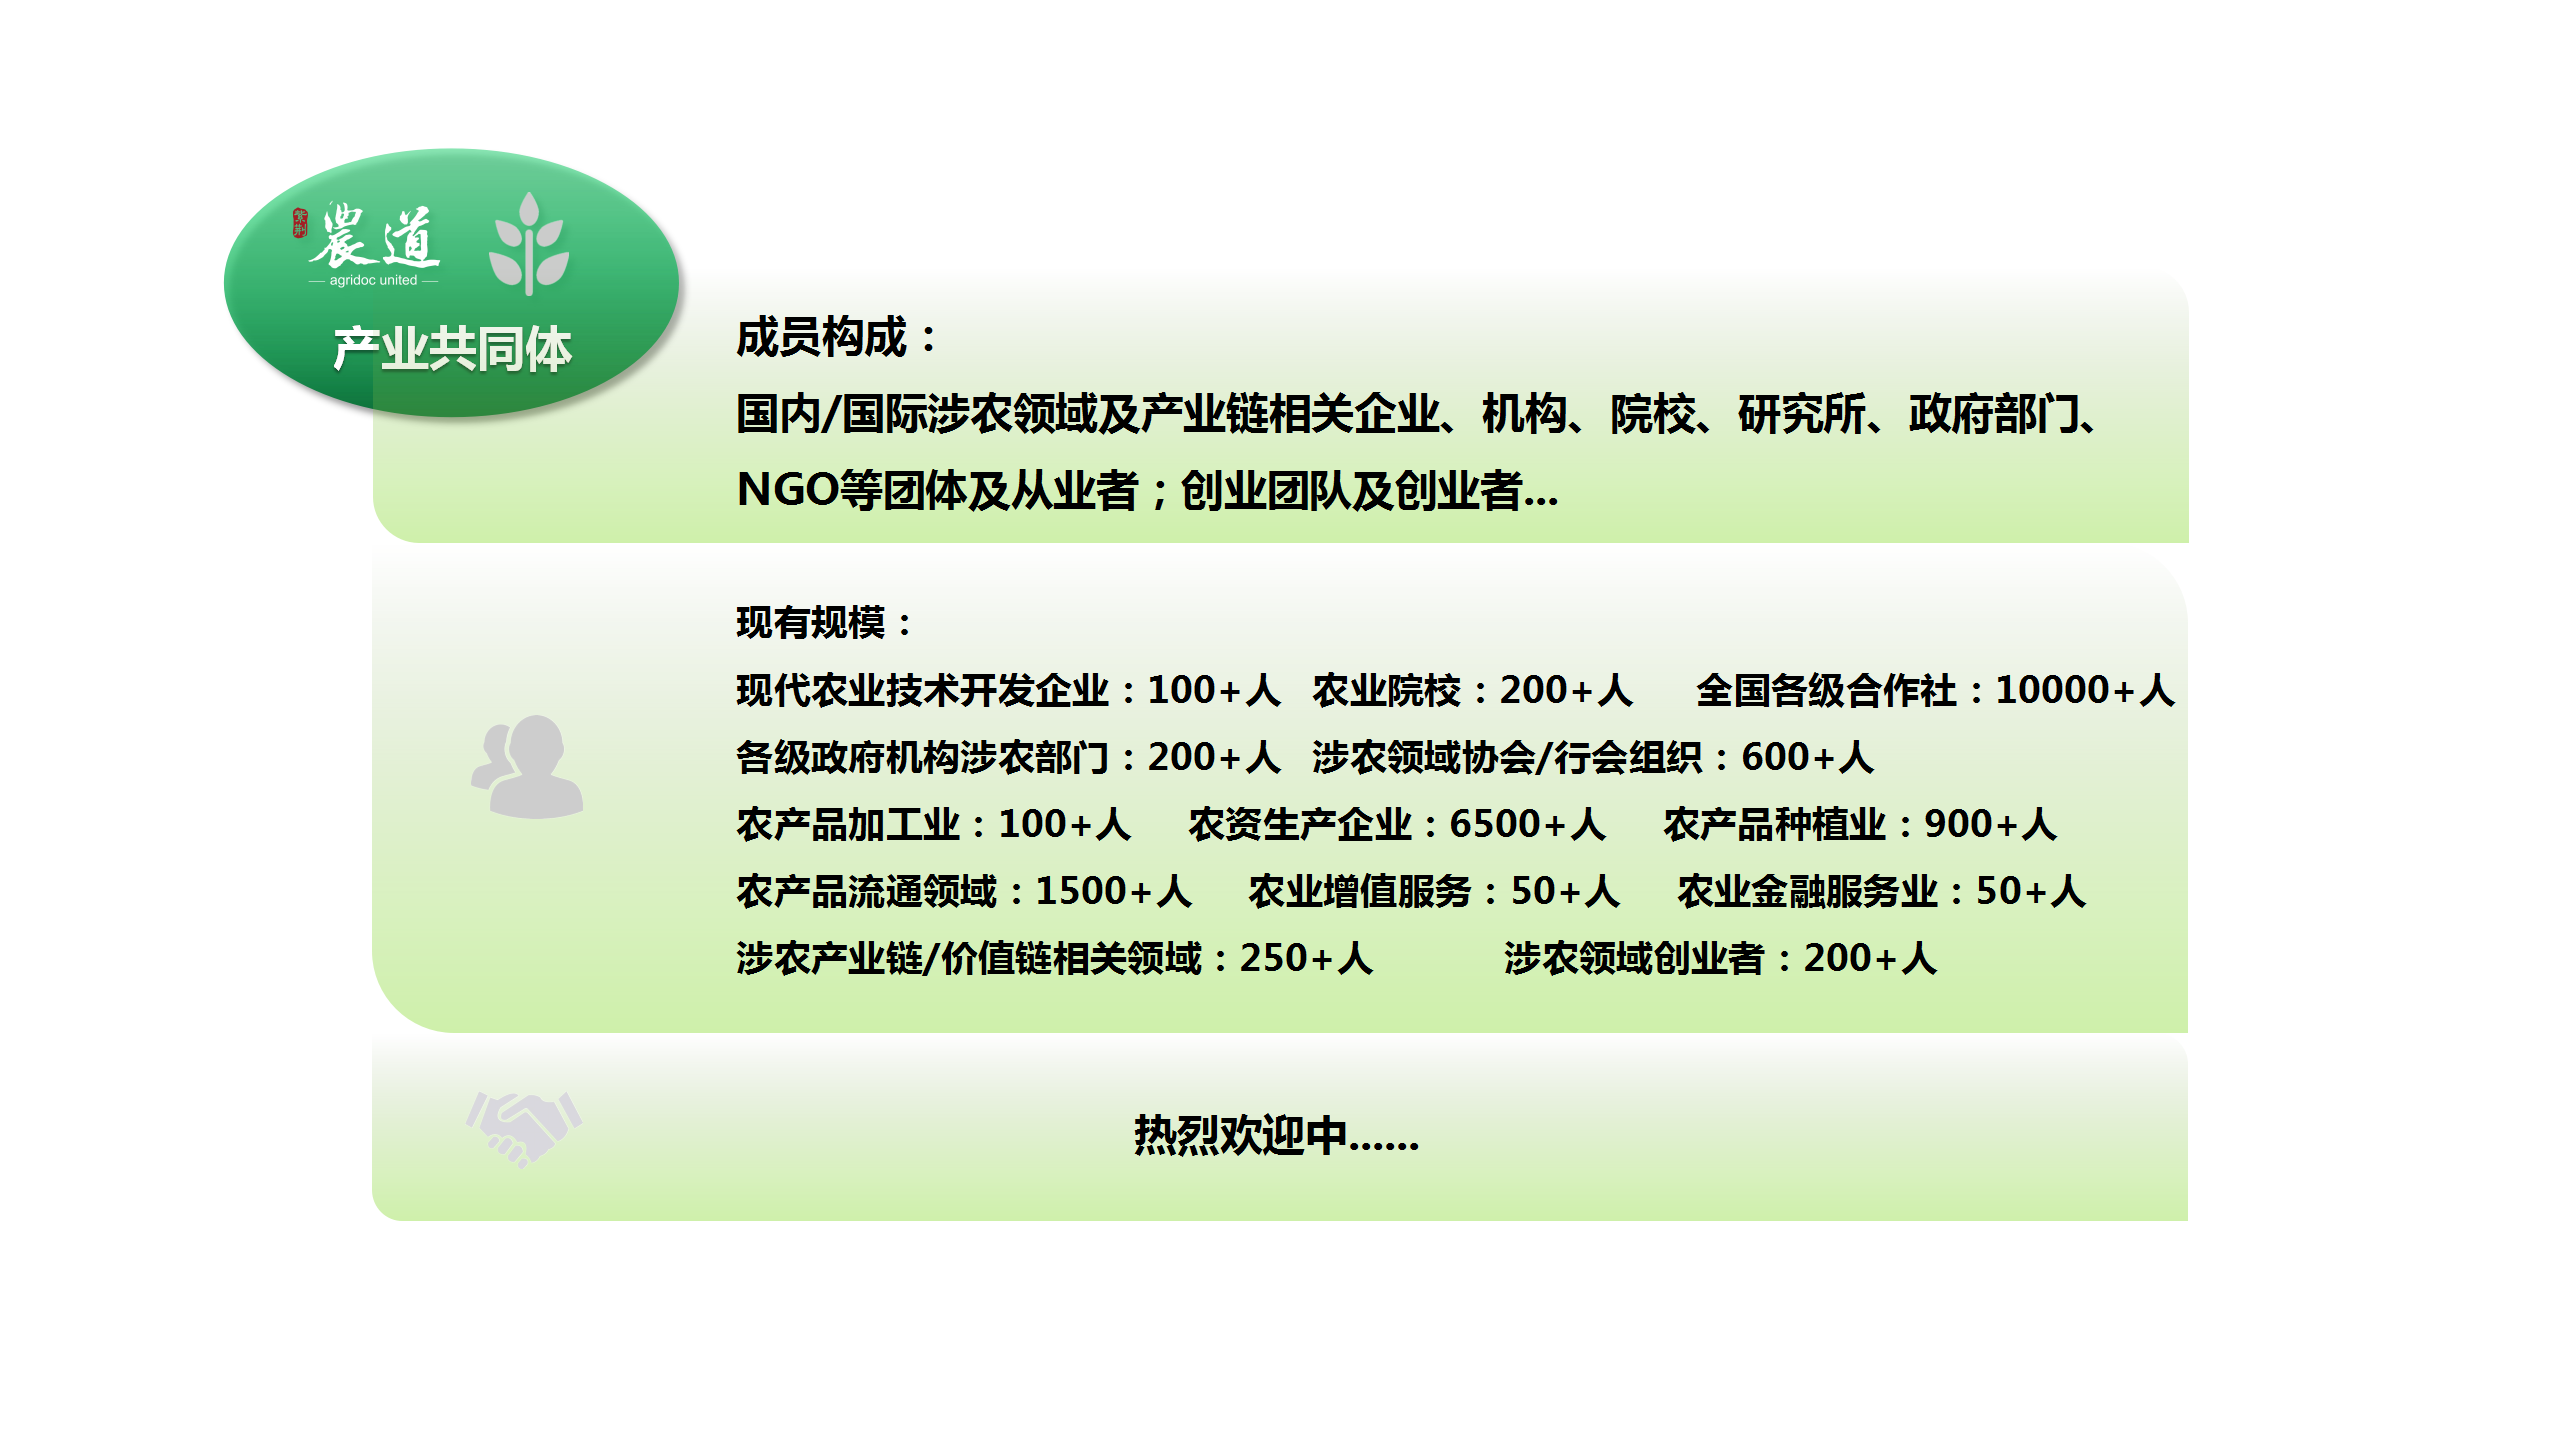 紫荆农道宣传资料配图设计参照（20201006）_05.png